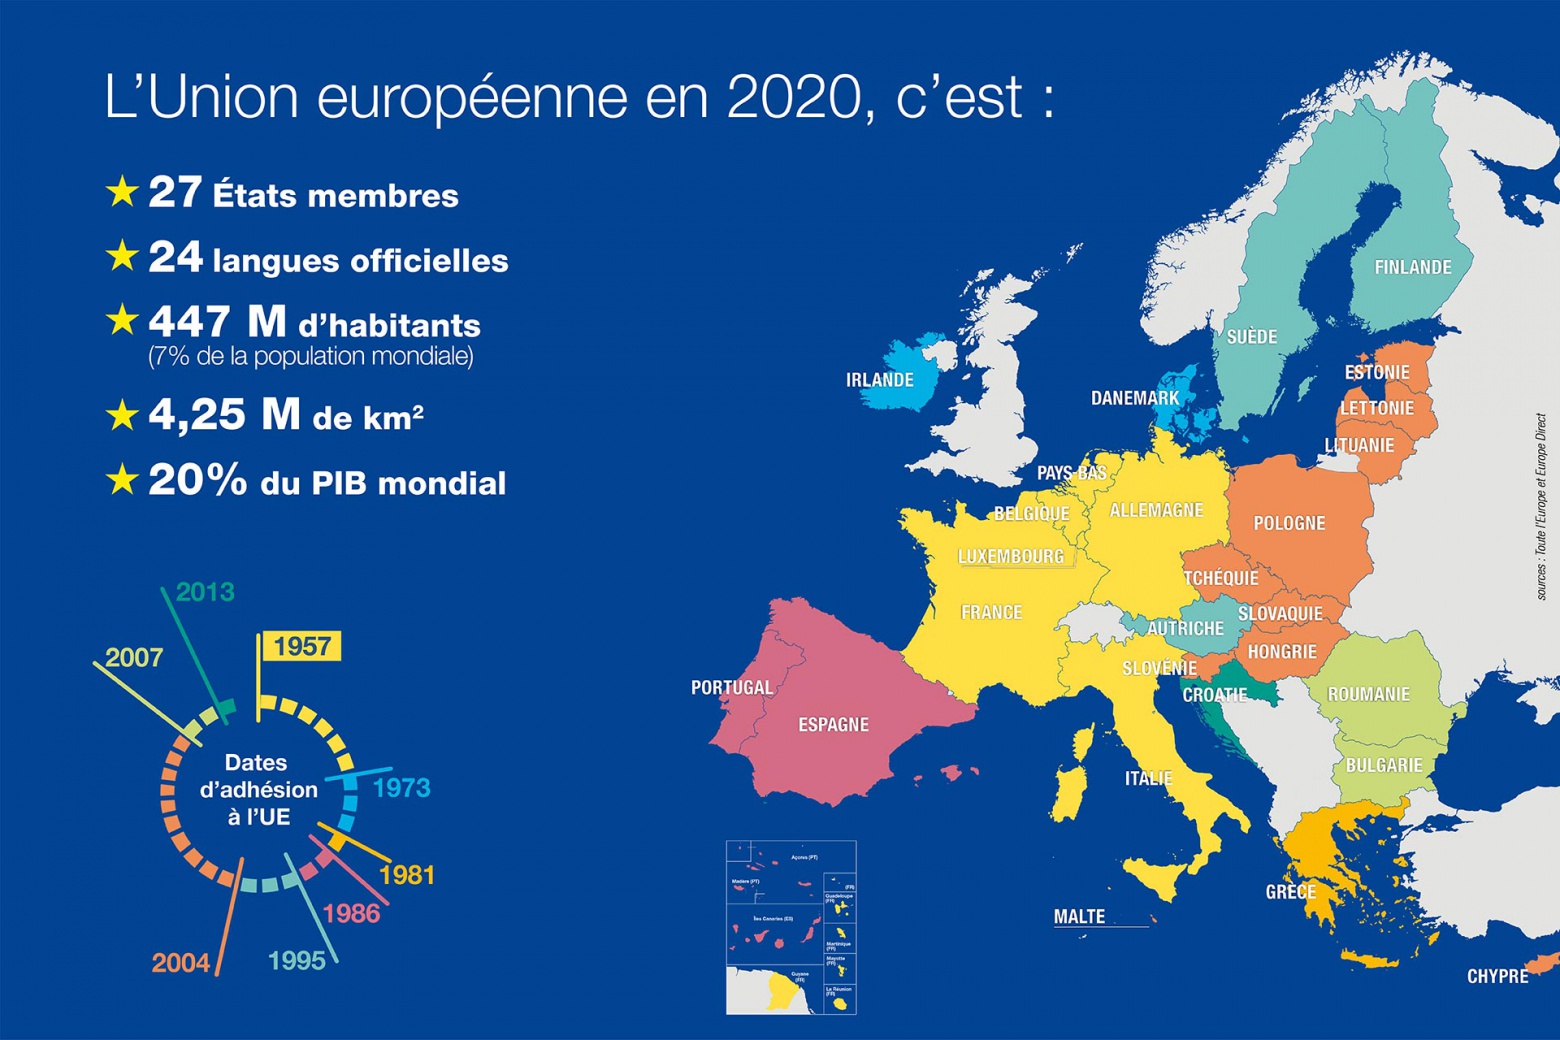 Carte de l’Union européenne et chiffres-clés en 2020 : c’est 27 États membres, 24 langues officielles, 447 millions d’habitants en 2020 soit 7 % de la population mondiale, 4,2 millions de km2 et 20% du PIB mondial.  Et schéma présentant les dates d'adhésion des pays à l'UE (sources : Toute l’Europe et Europe Direct) 